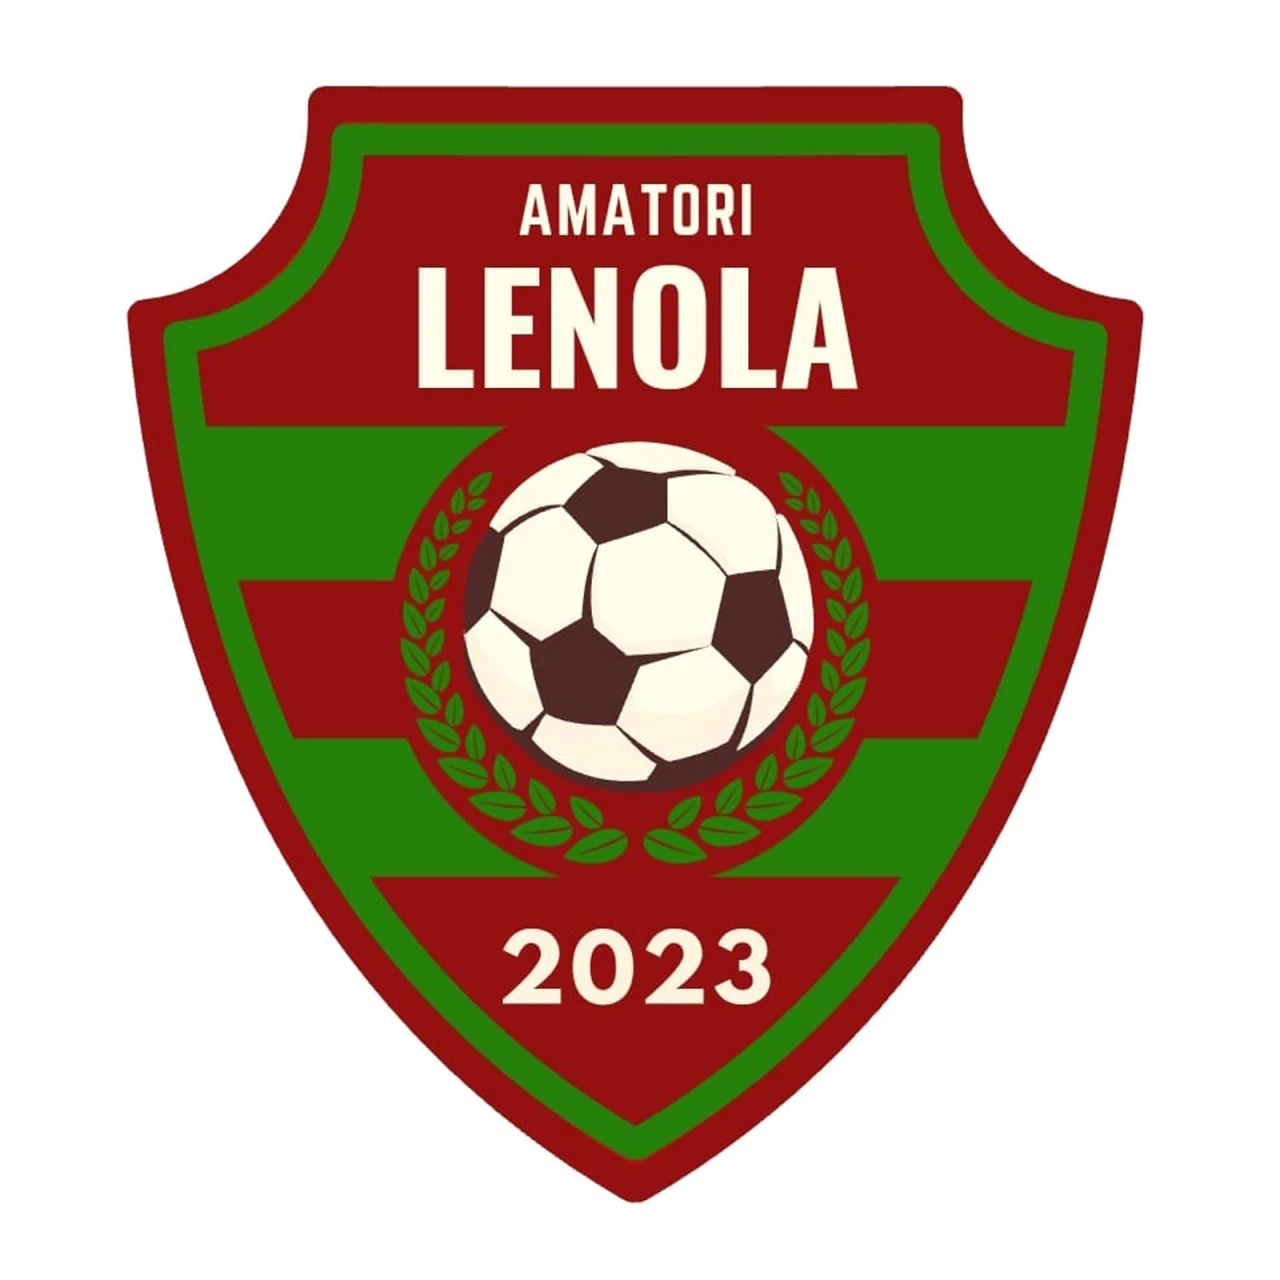 Amatori Lenola 2023